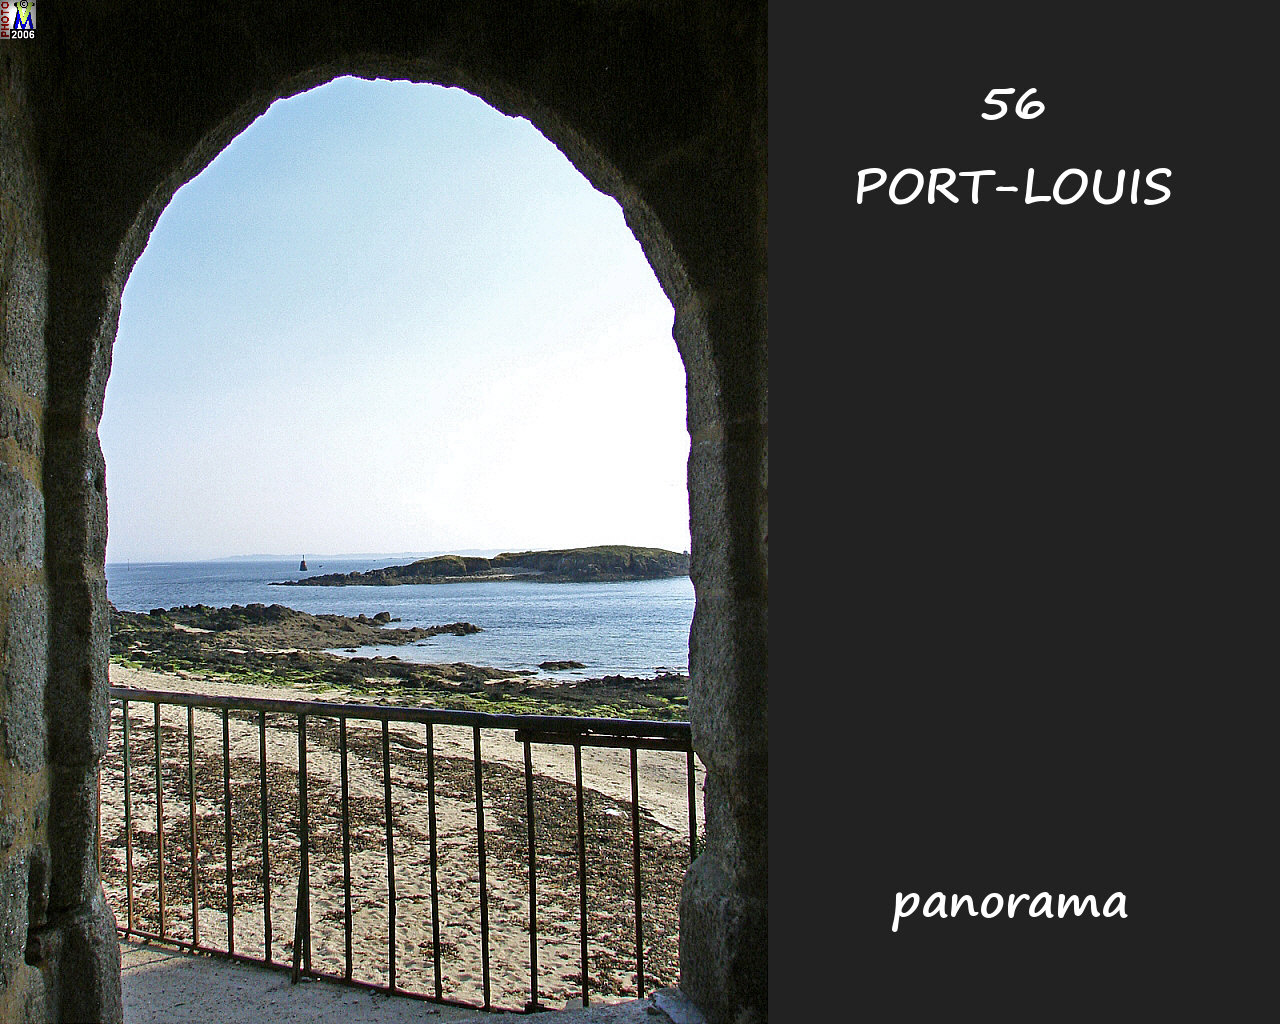 56PORT-LOUIS_panorama_100.jpg